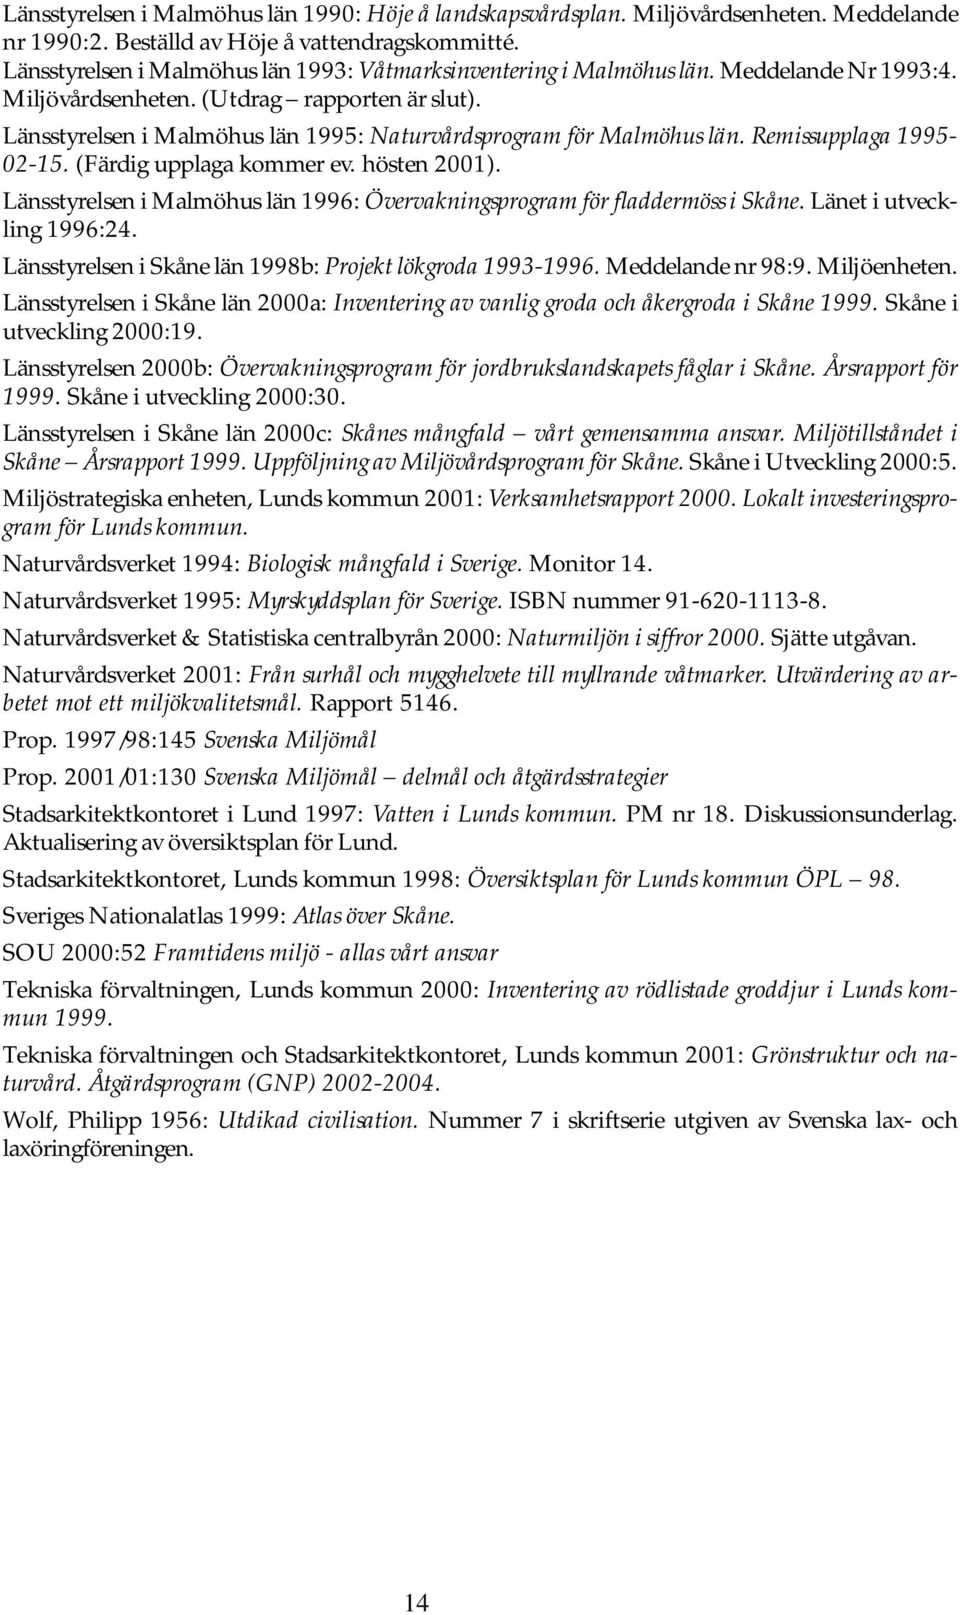 Länsstyrelsen i Malmöhus län 1995: Naturvårdsprogram för Malmöhus län. Remissupplaga 1995-02-15. (Färdig upplaga kommer ev. hösten 2001).